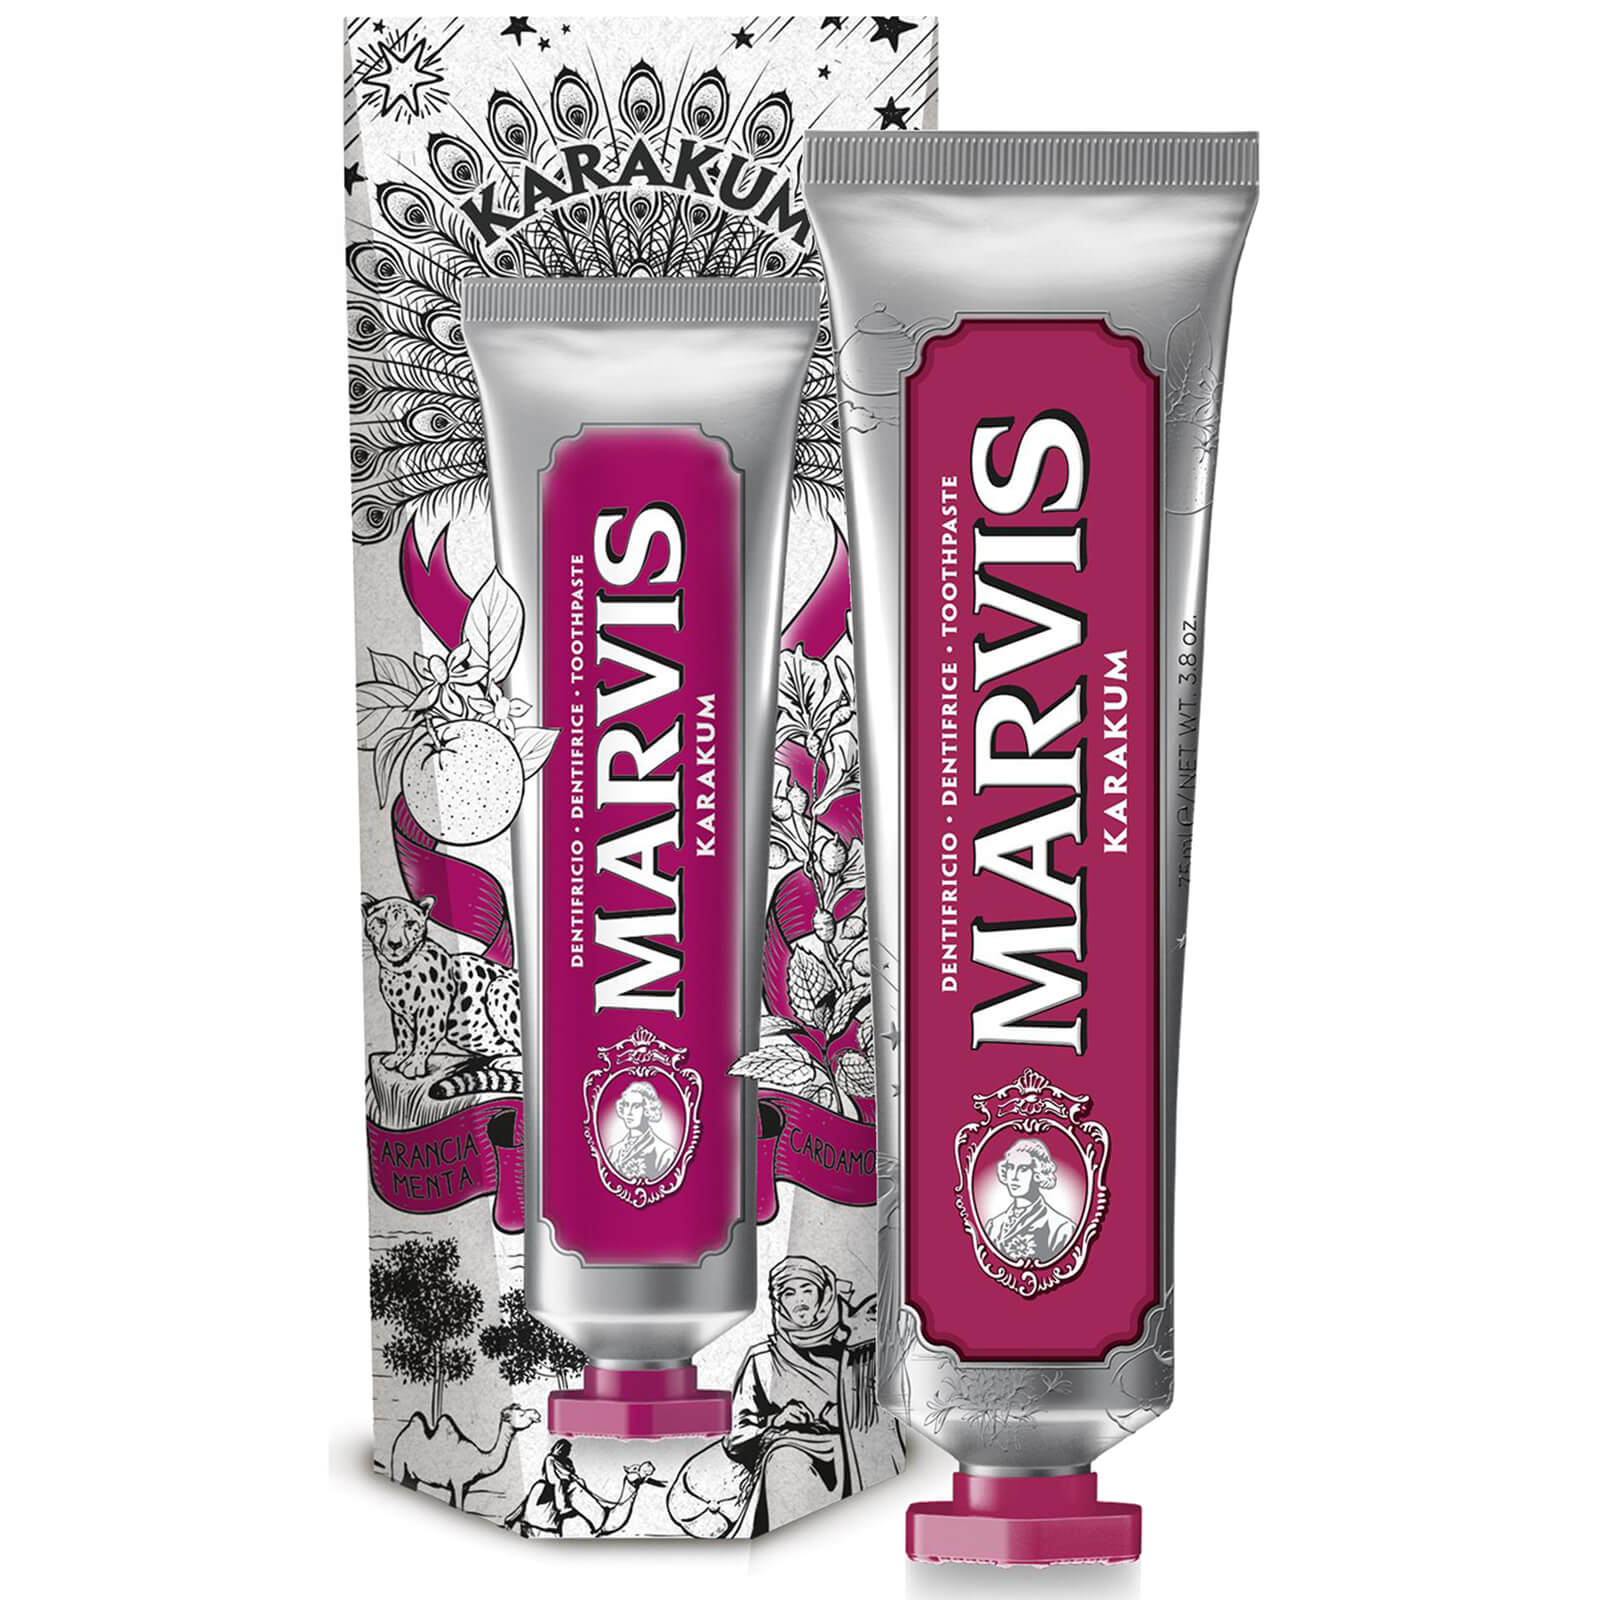 Marvis Karakum Wonders of the World Toothpaste 75ml